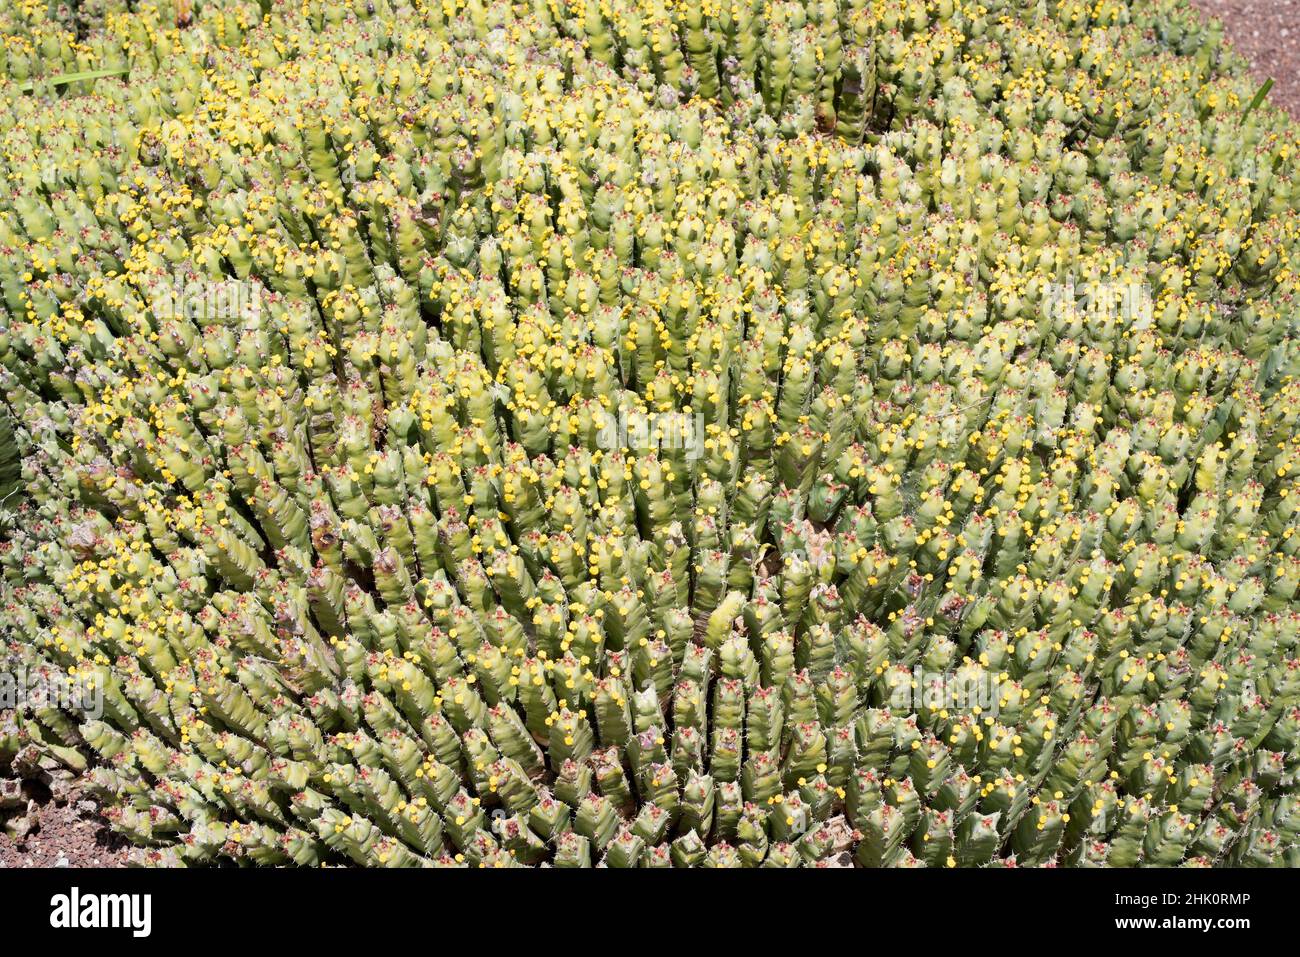 Lo sprurge di resina (Euphorbia resinifera) è un arbusto cactiforme endemico del Marocco. Il lattice è tossico. Foto Stock